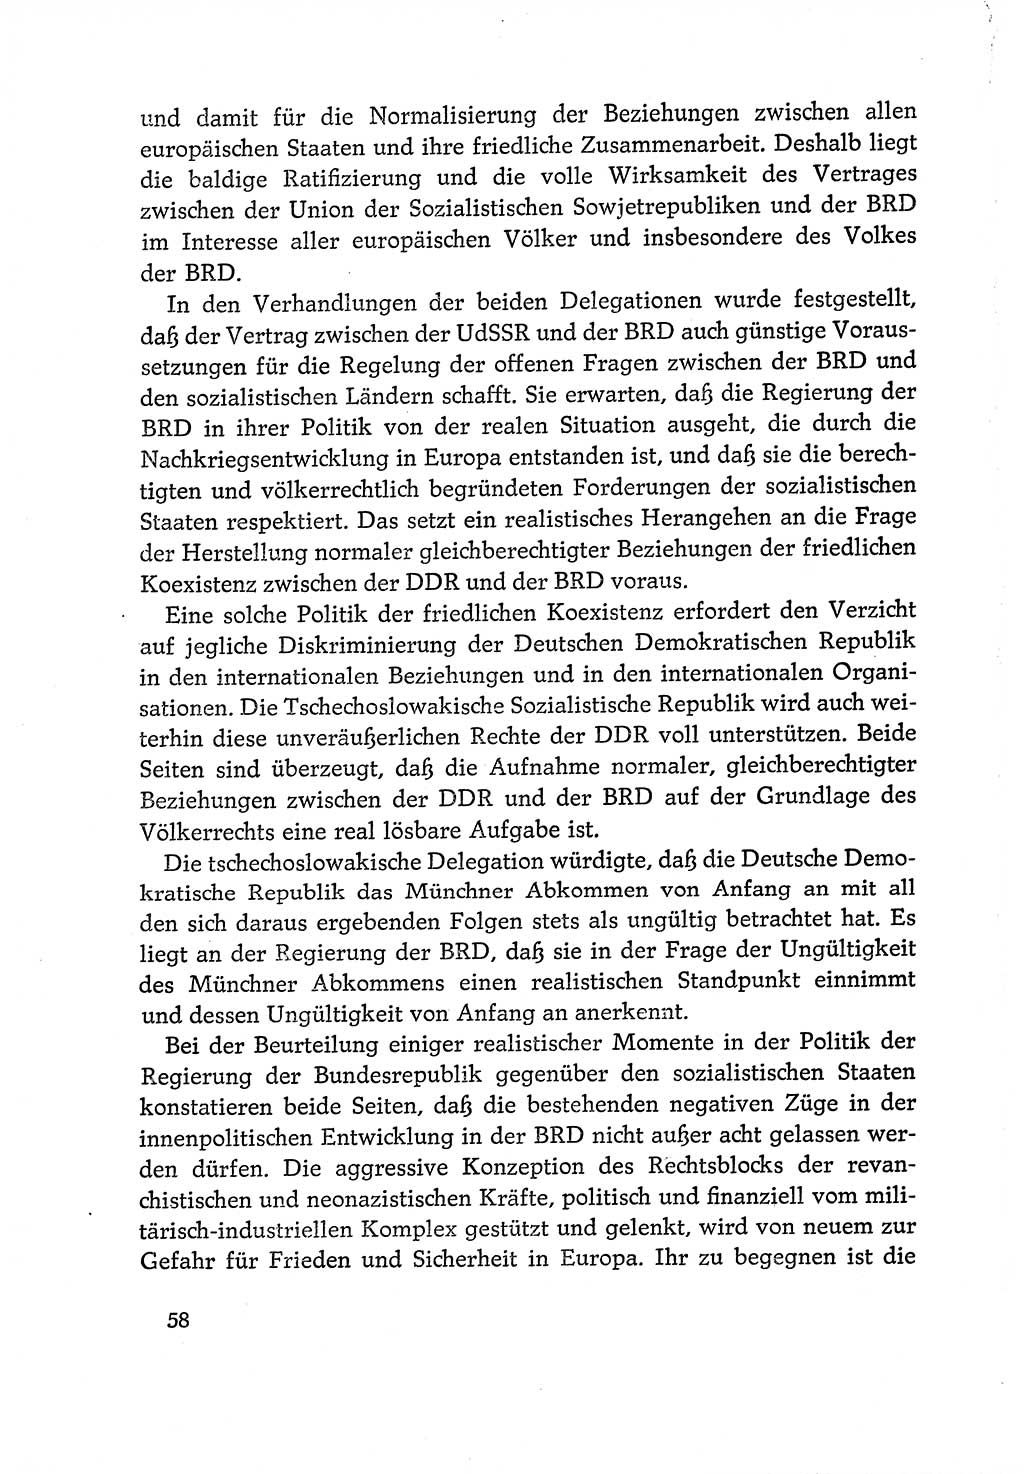 Dokumente der Sozialistischen Einheitspartei Deutschlands (SED) [Deutsche Demokratische Republik (DDR)] 1970-1971, Seite 58 (Dok. SED DDR 1970-1971, S. 58)